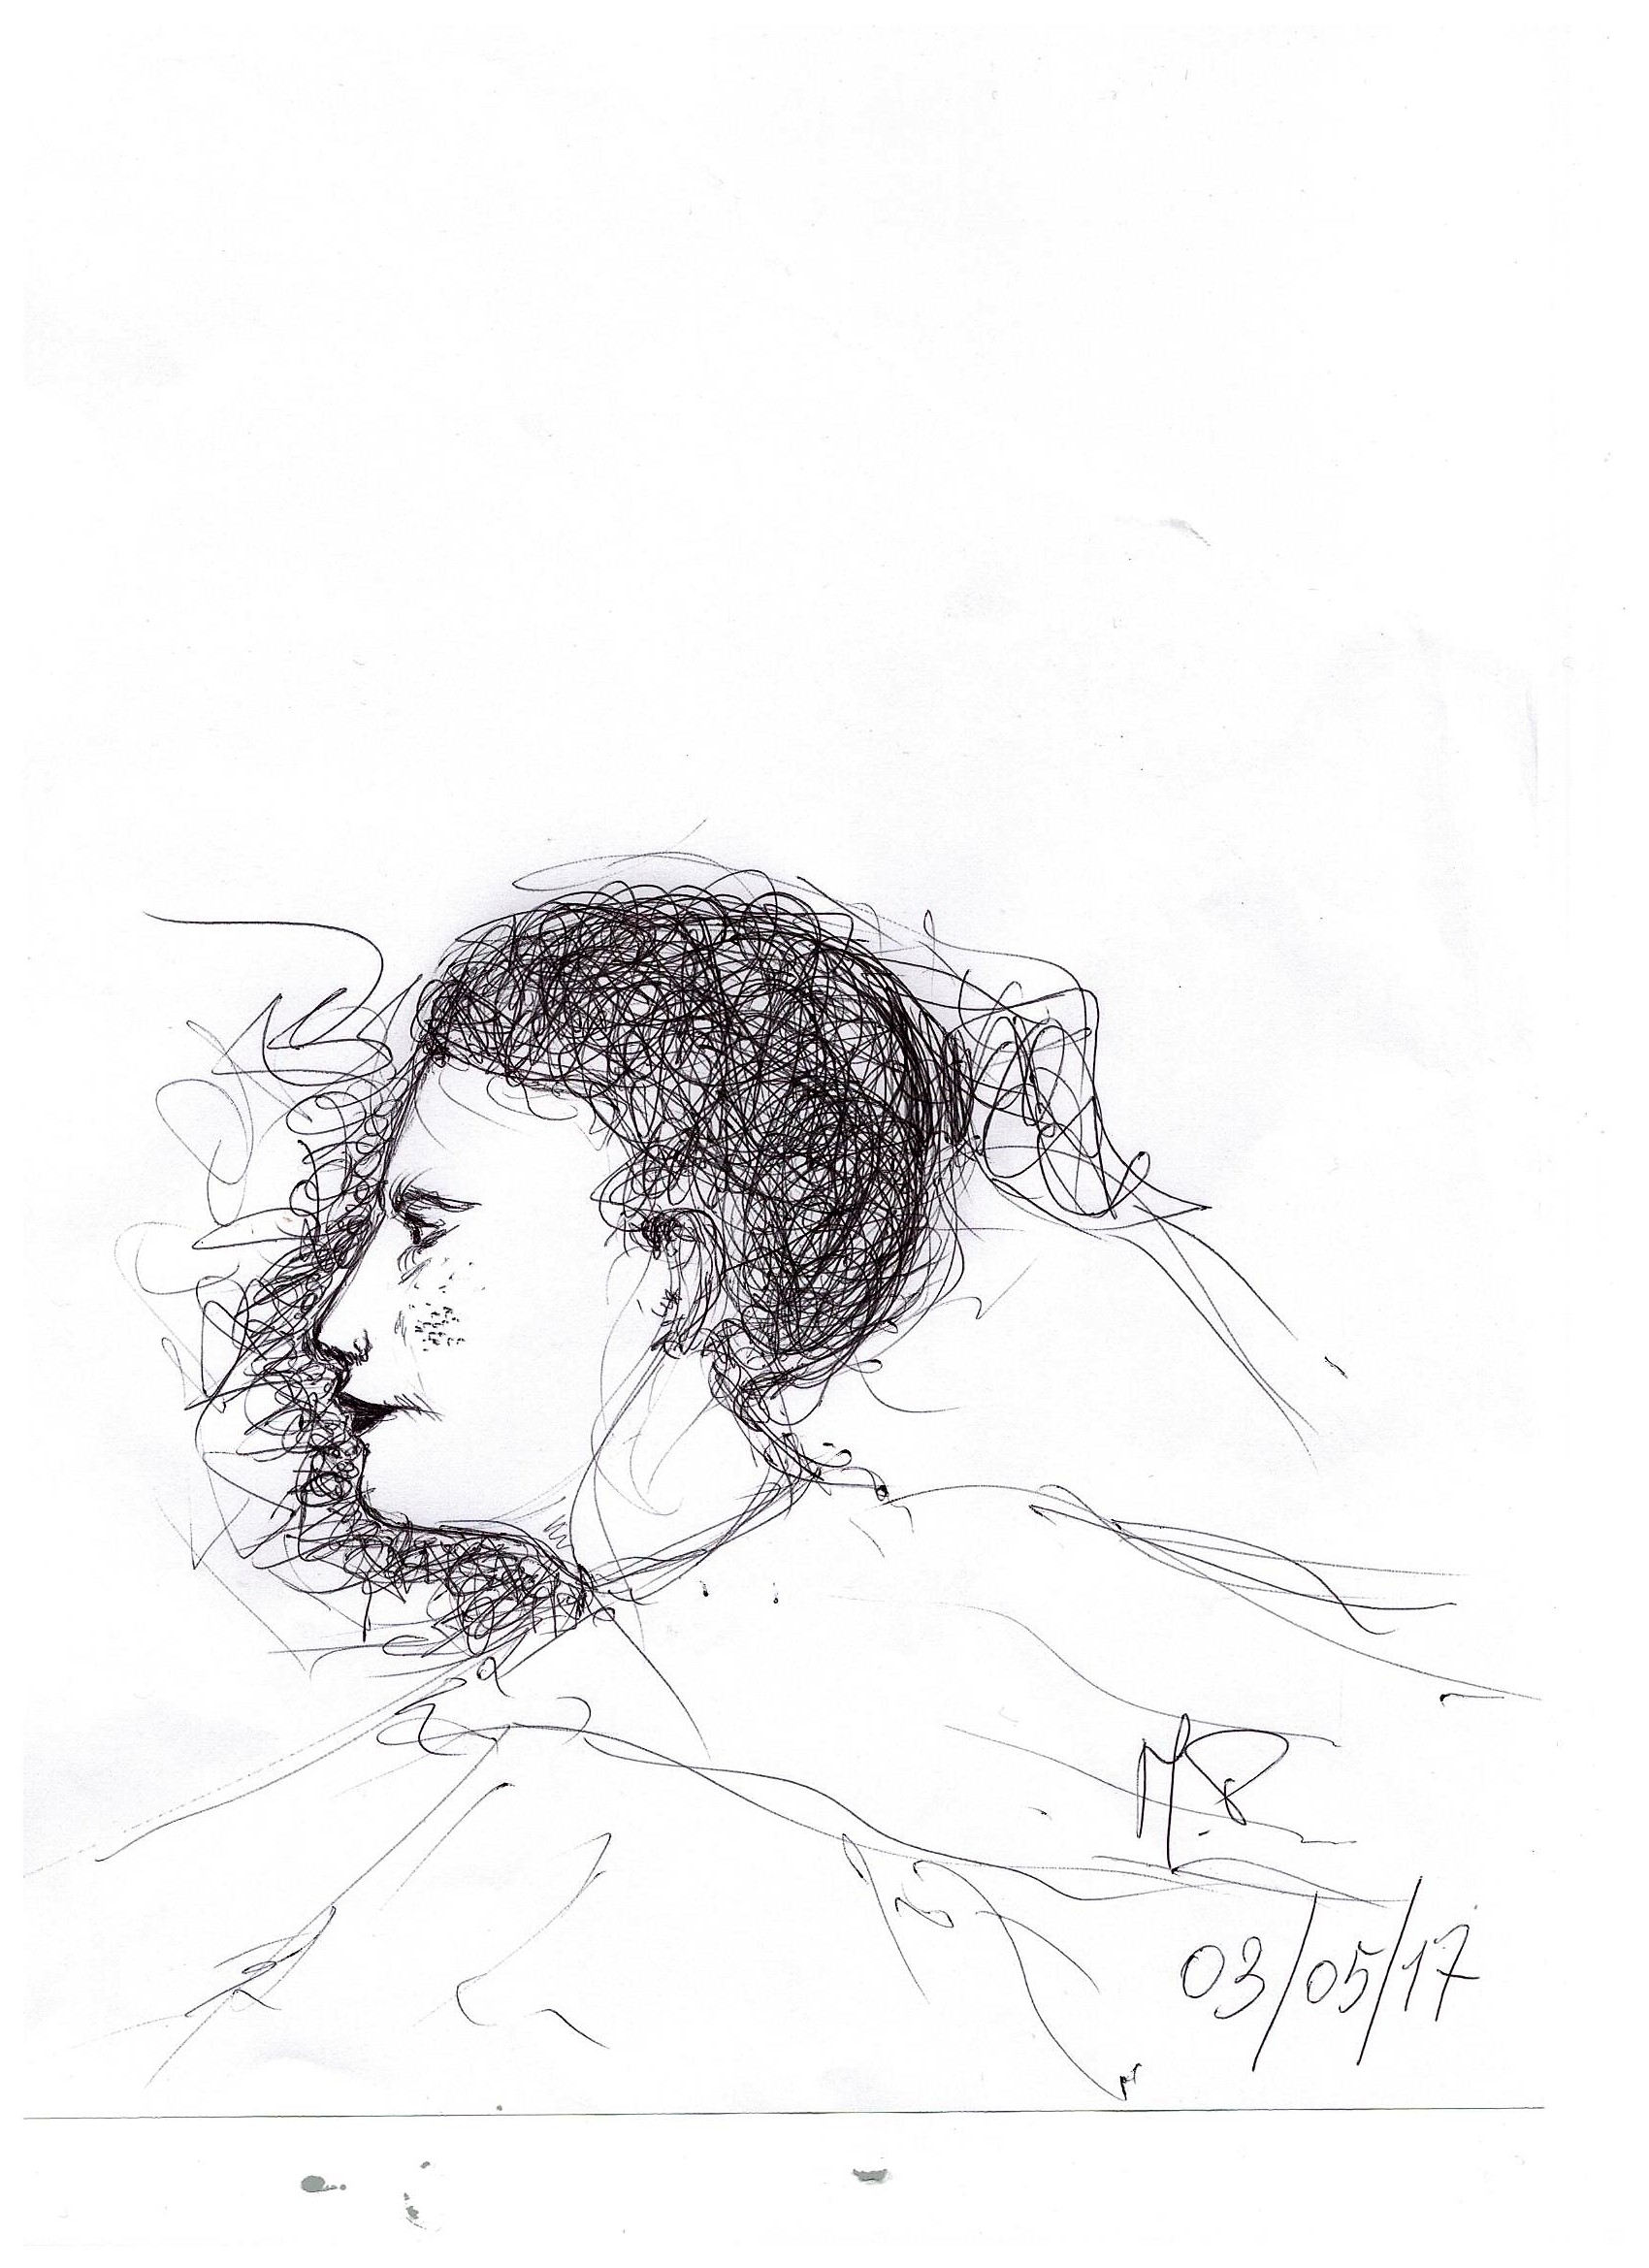 Scarabocchio a penna (Pen scribble), Profilo di una donna immaginaria, disegno a penna (Pen drawing) su foglio A4, Pasquale Mastrogiacomo, Acerno (SA).